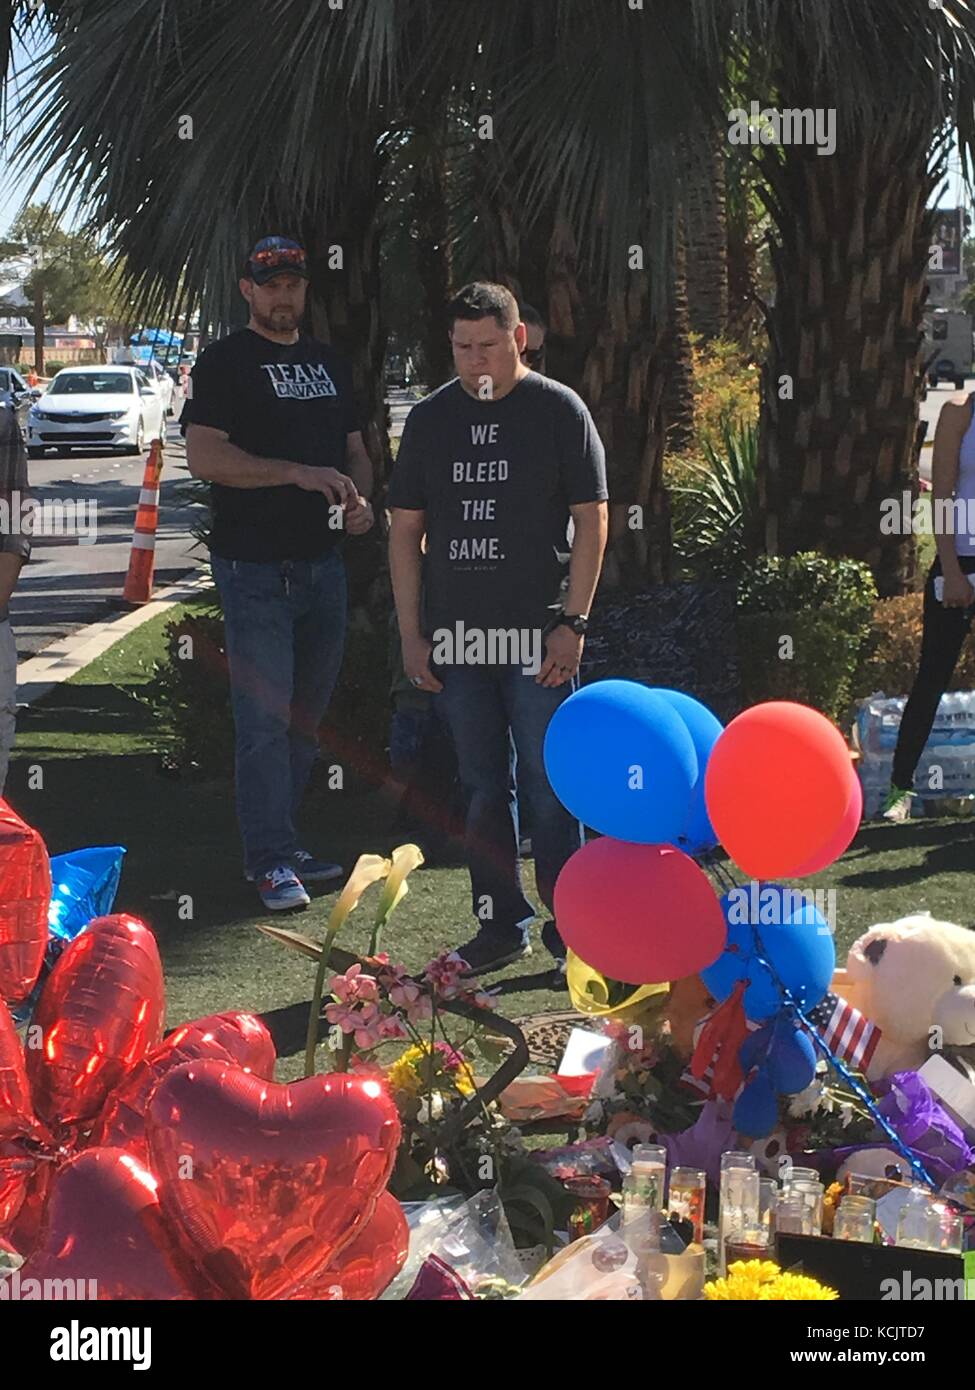 Las Vegas, Nevada, USA. 05 Okt, 2017. poignant Bild von Las Vegas trauernder Wer hat ein T-Shirt mit der Aufschrift "Wir die gleichen entlüften." Quelle: Benjamin mcgurk/alamy leben Nachrichten Stockfoto